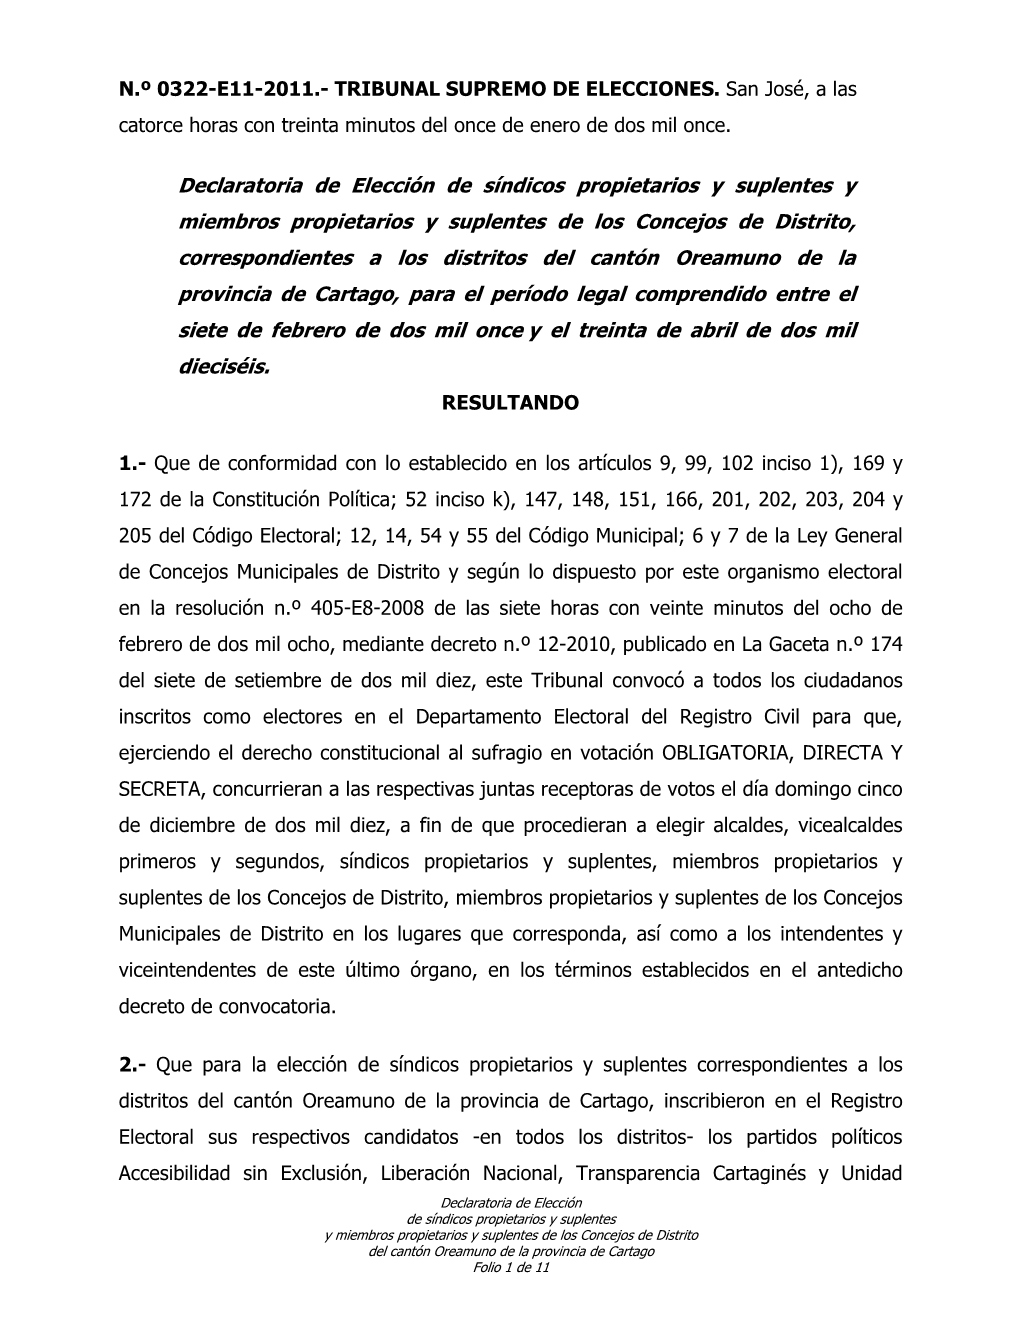 0322-E11-2011 (Declaratoria Síndicos Y Concejales Oreamuno)